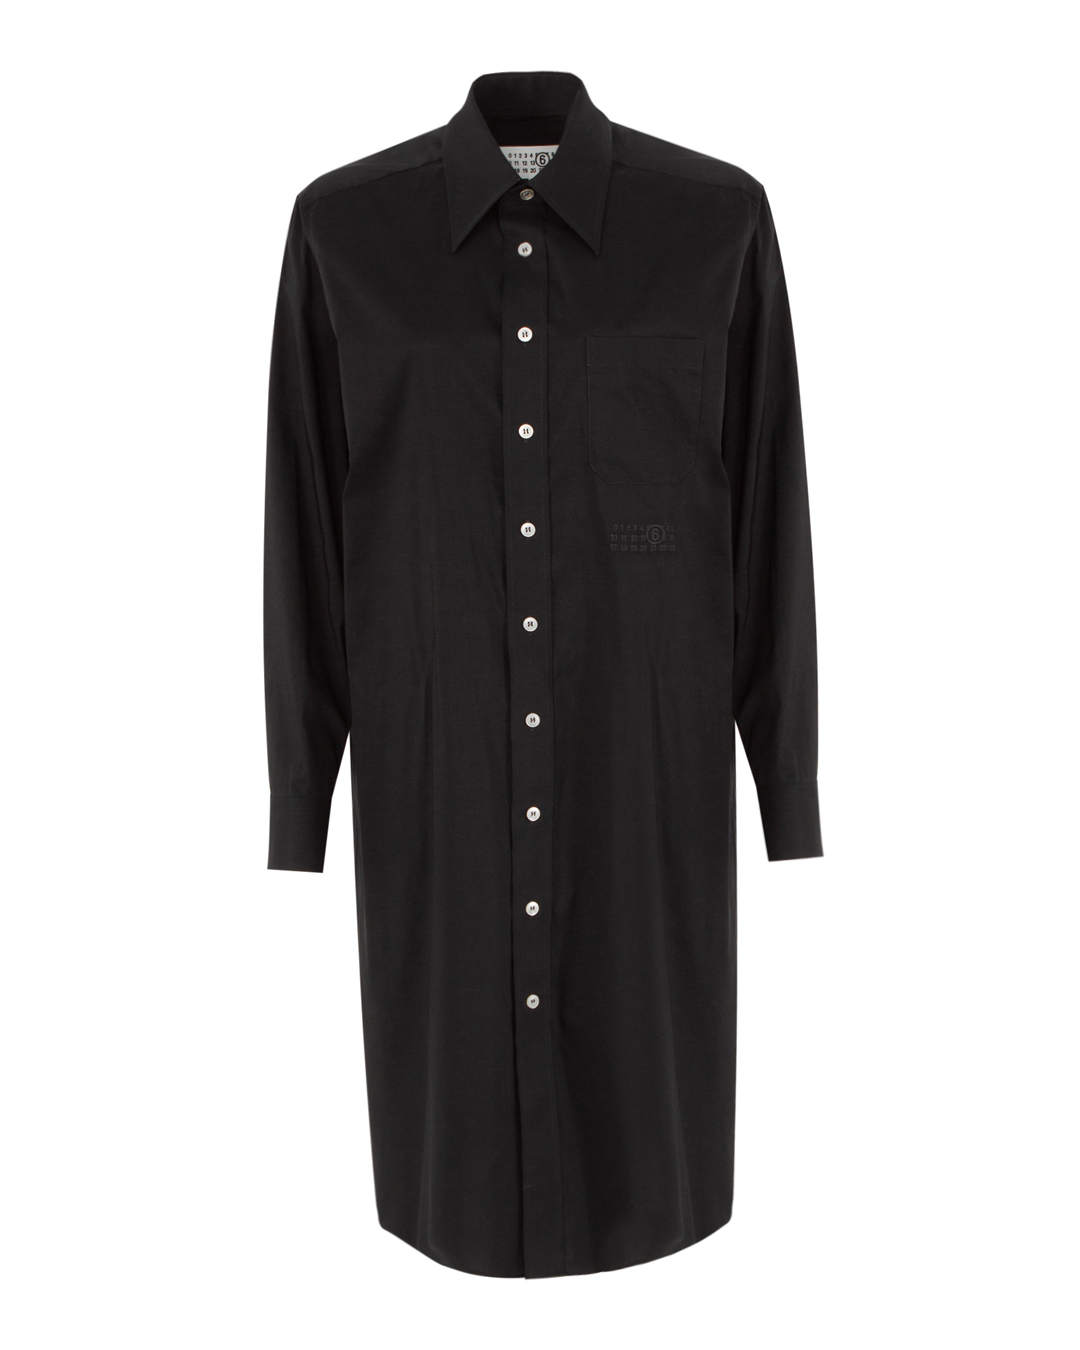 платье MM6 Maison Margiela SH2DT0001 черный 44, размер 44